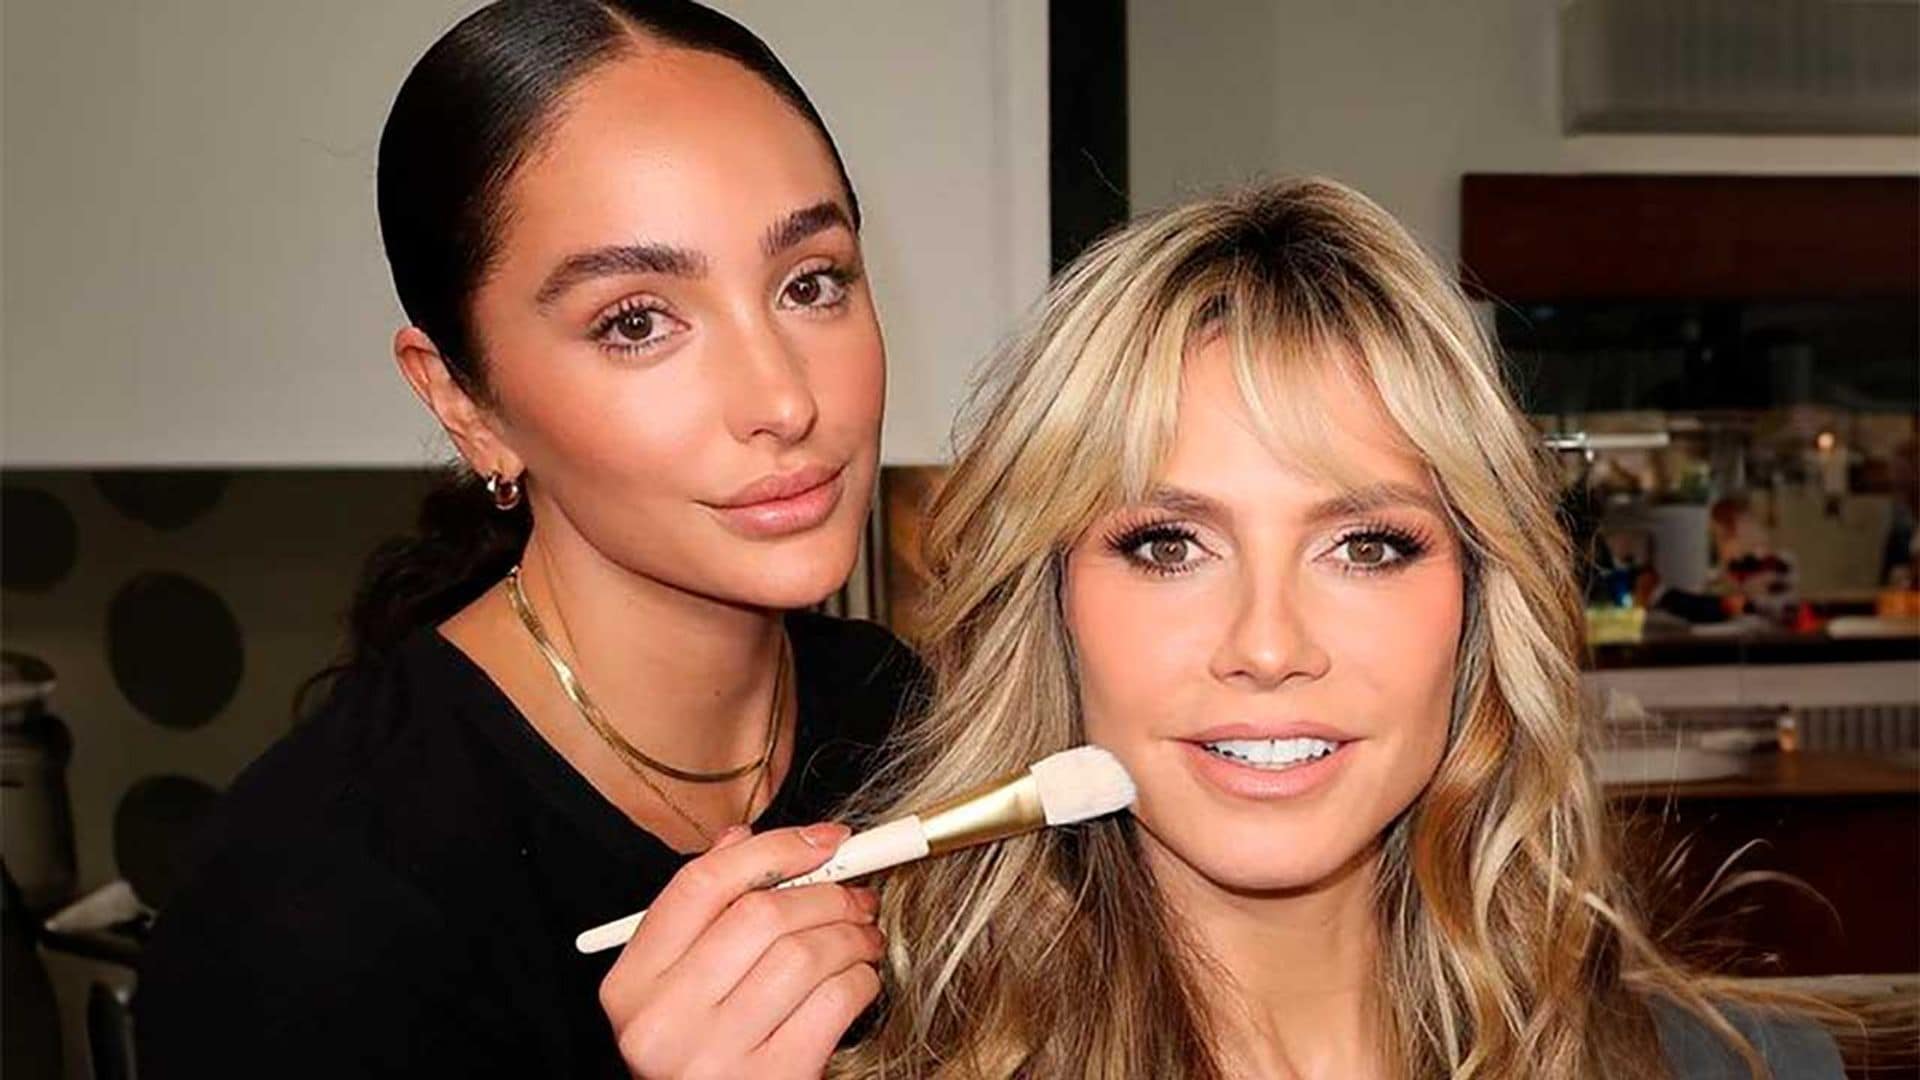 Si tienes la piel grasa, prueba el truco con efecto 'glow' de la maquilladora de Heidi Klum y Jennifer Lopez